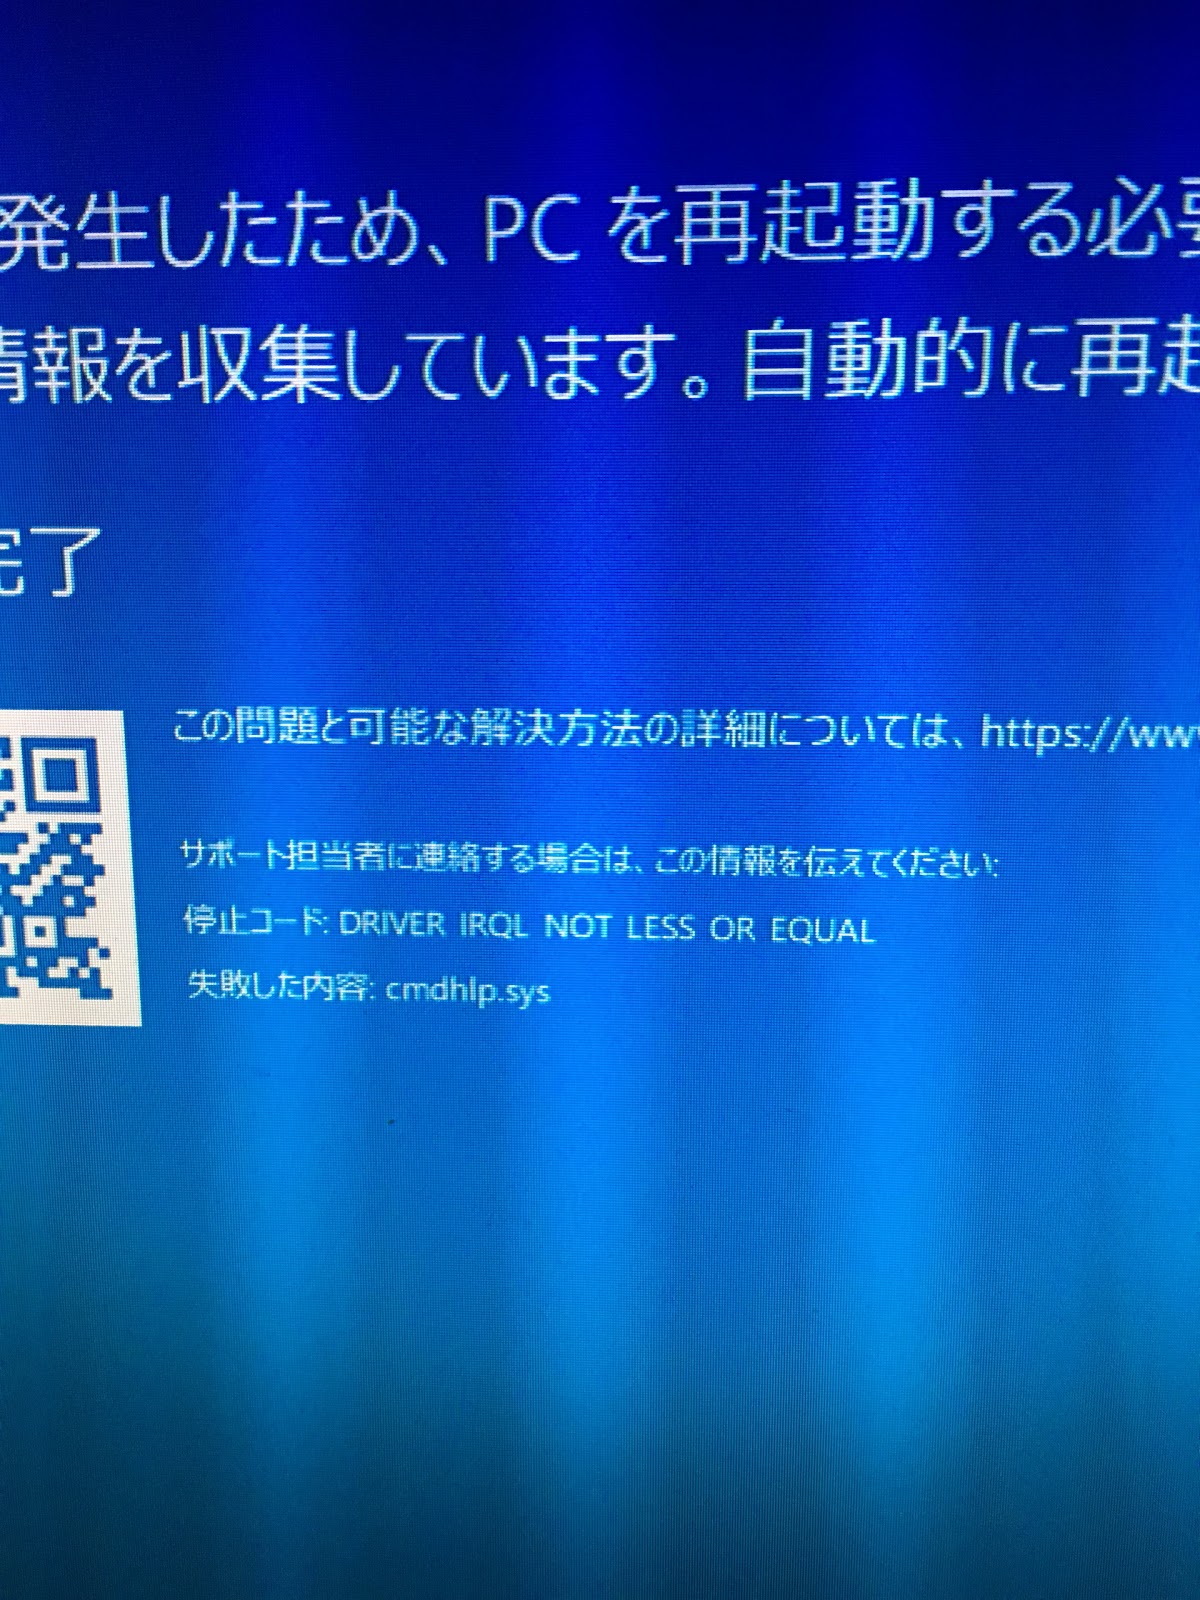 ただの備忘録: Windows10 Creators update適用後のブルースクリーン連発とその後の顛末